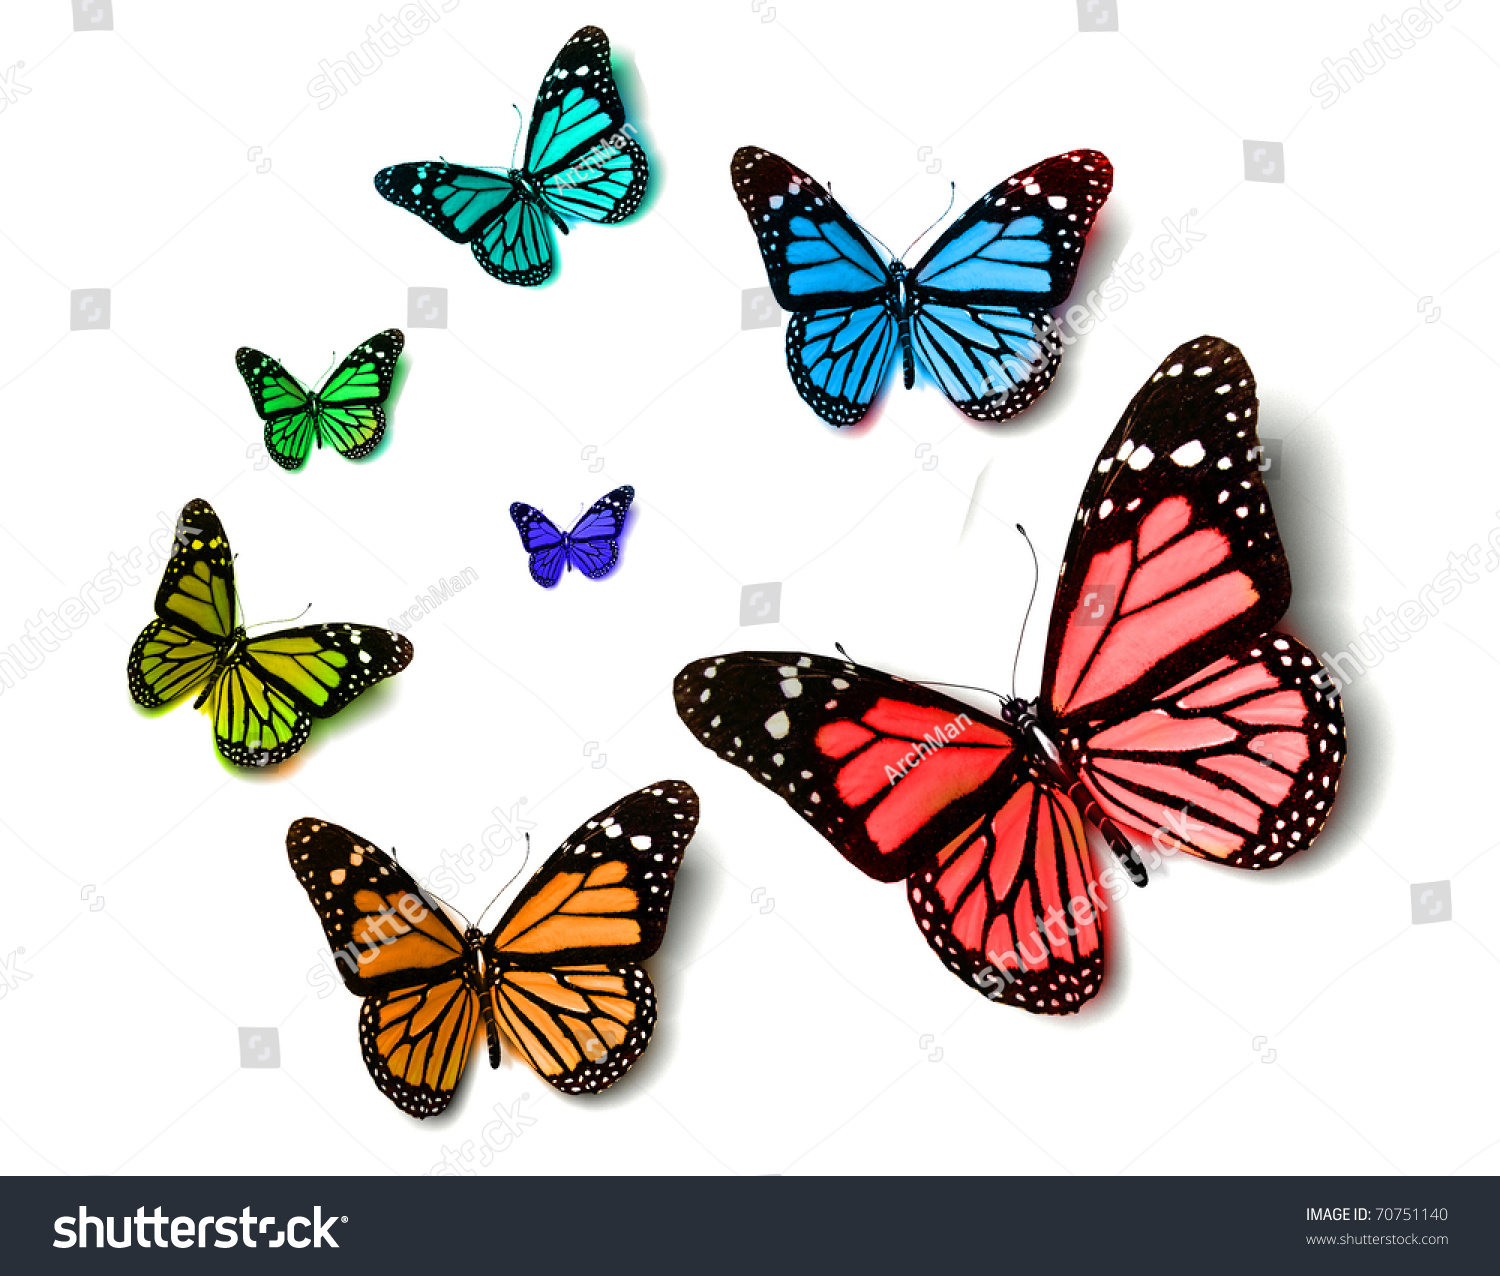 Butterfly Stock Photo 70751140 : Shutterstock